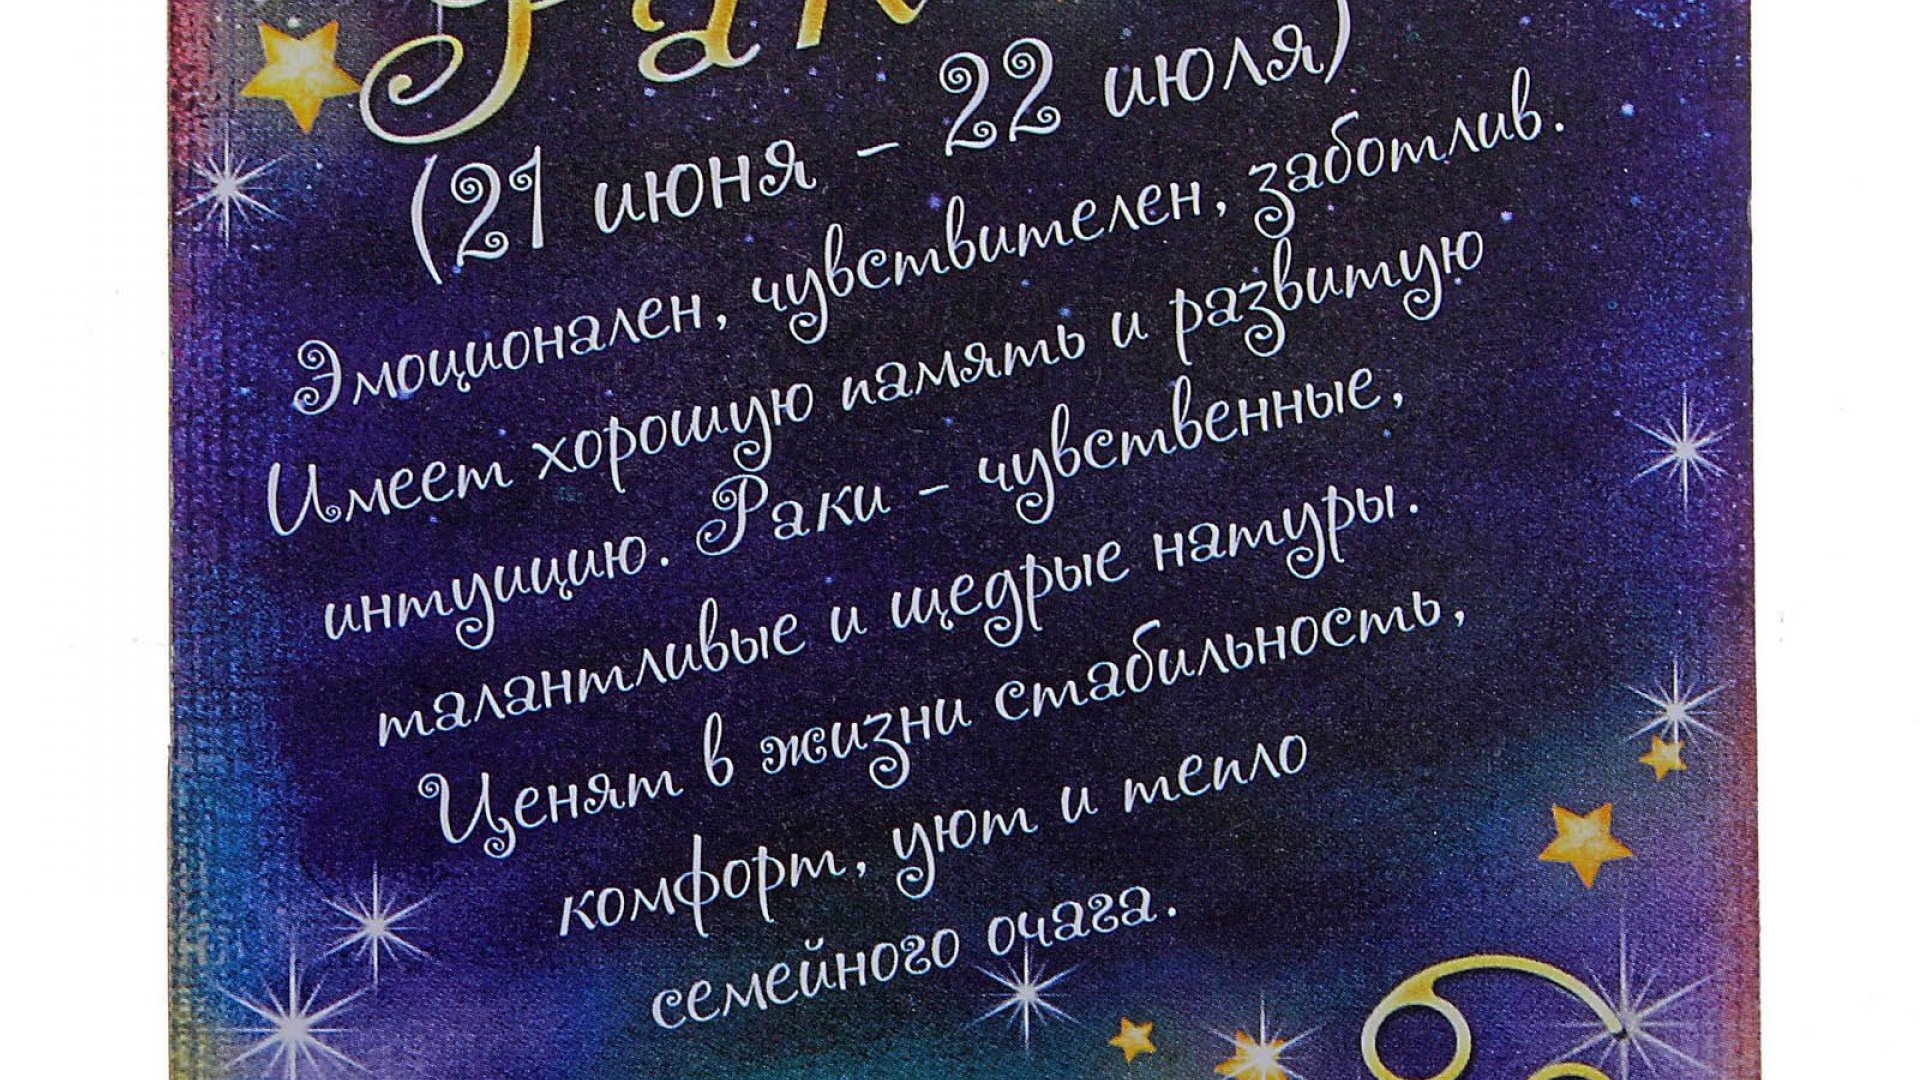 Овен дни рождения. Поздравление овна с днем рождения. Астрологическое поздравление с днем рождения. Мой знак зодиака весы. Астрологическая открытка с днем рождения.